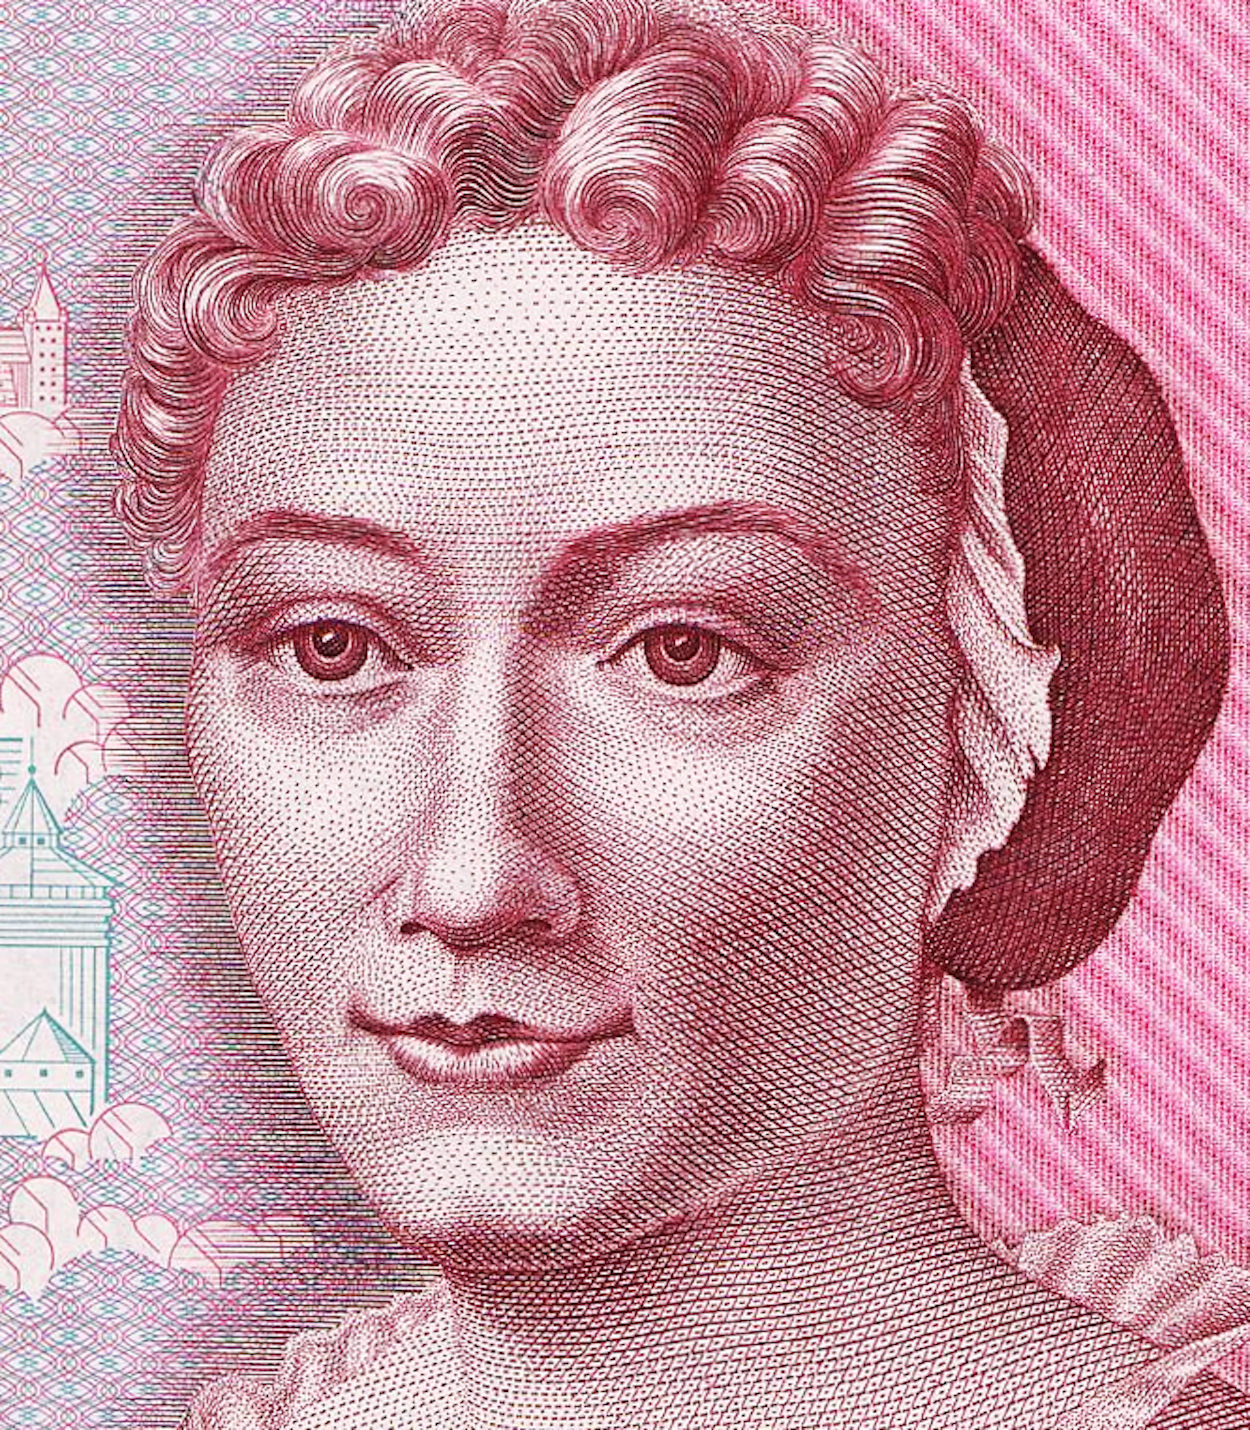 Maria Sibylla Merian - 2 April 1647 - 13 January 1717